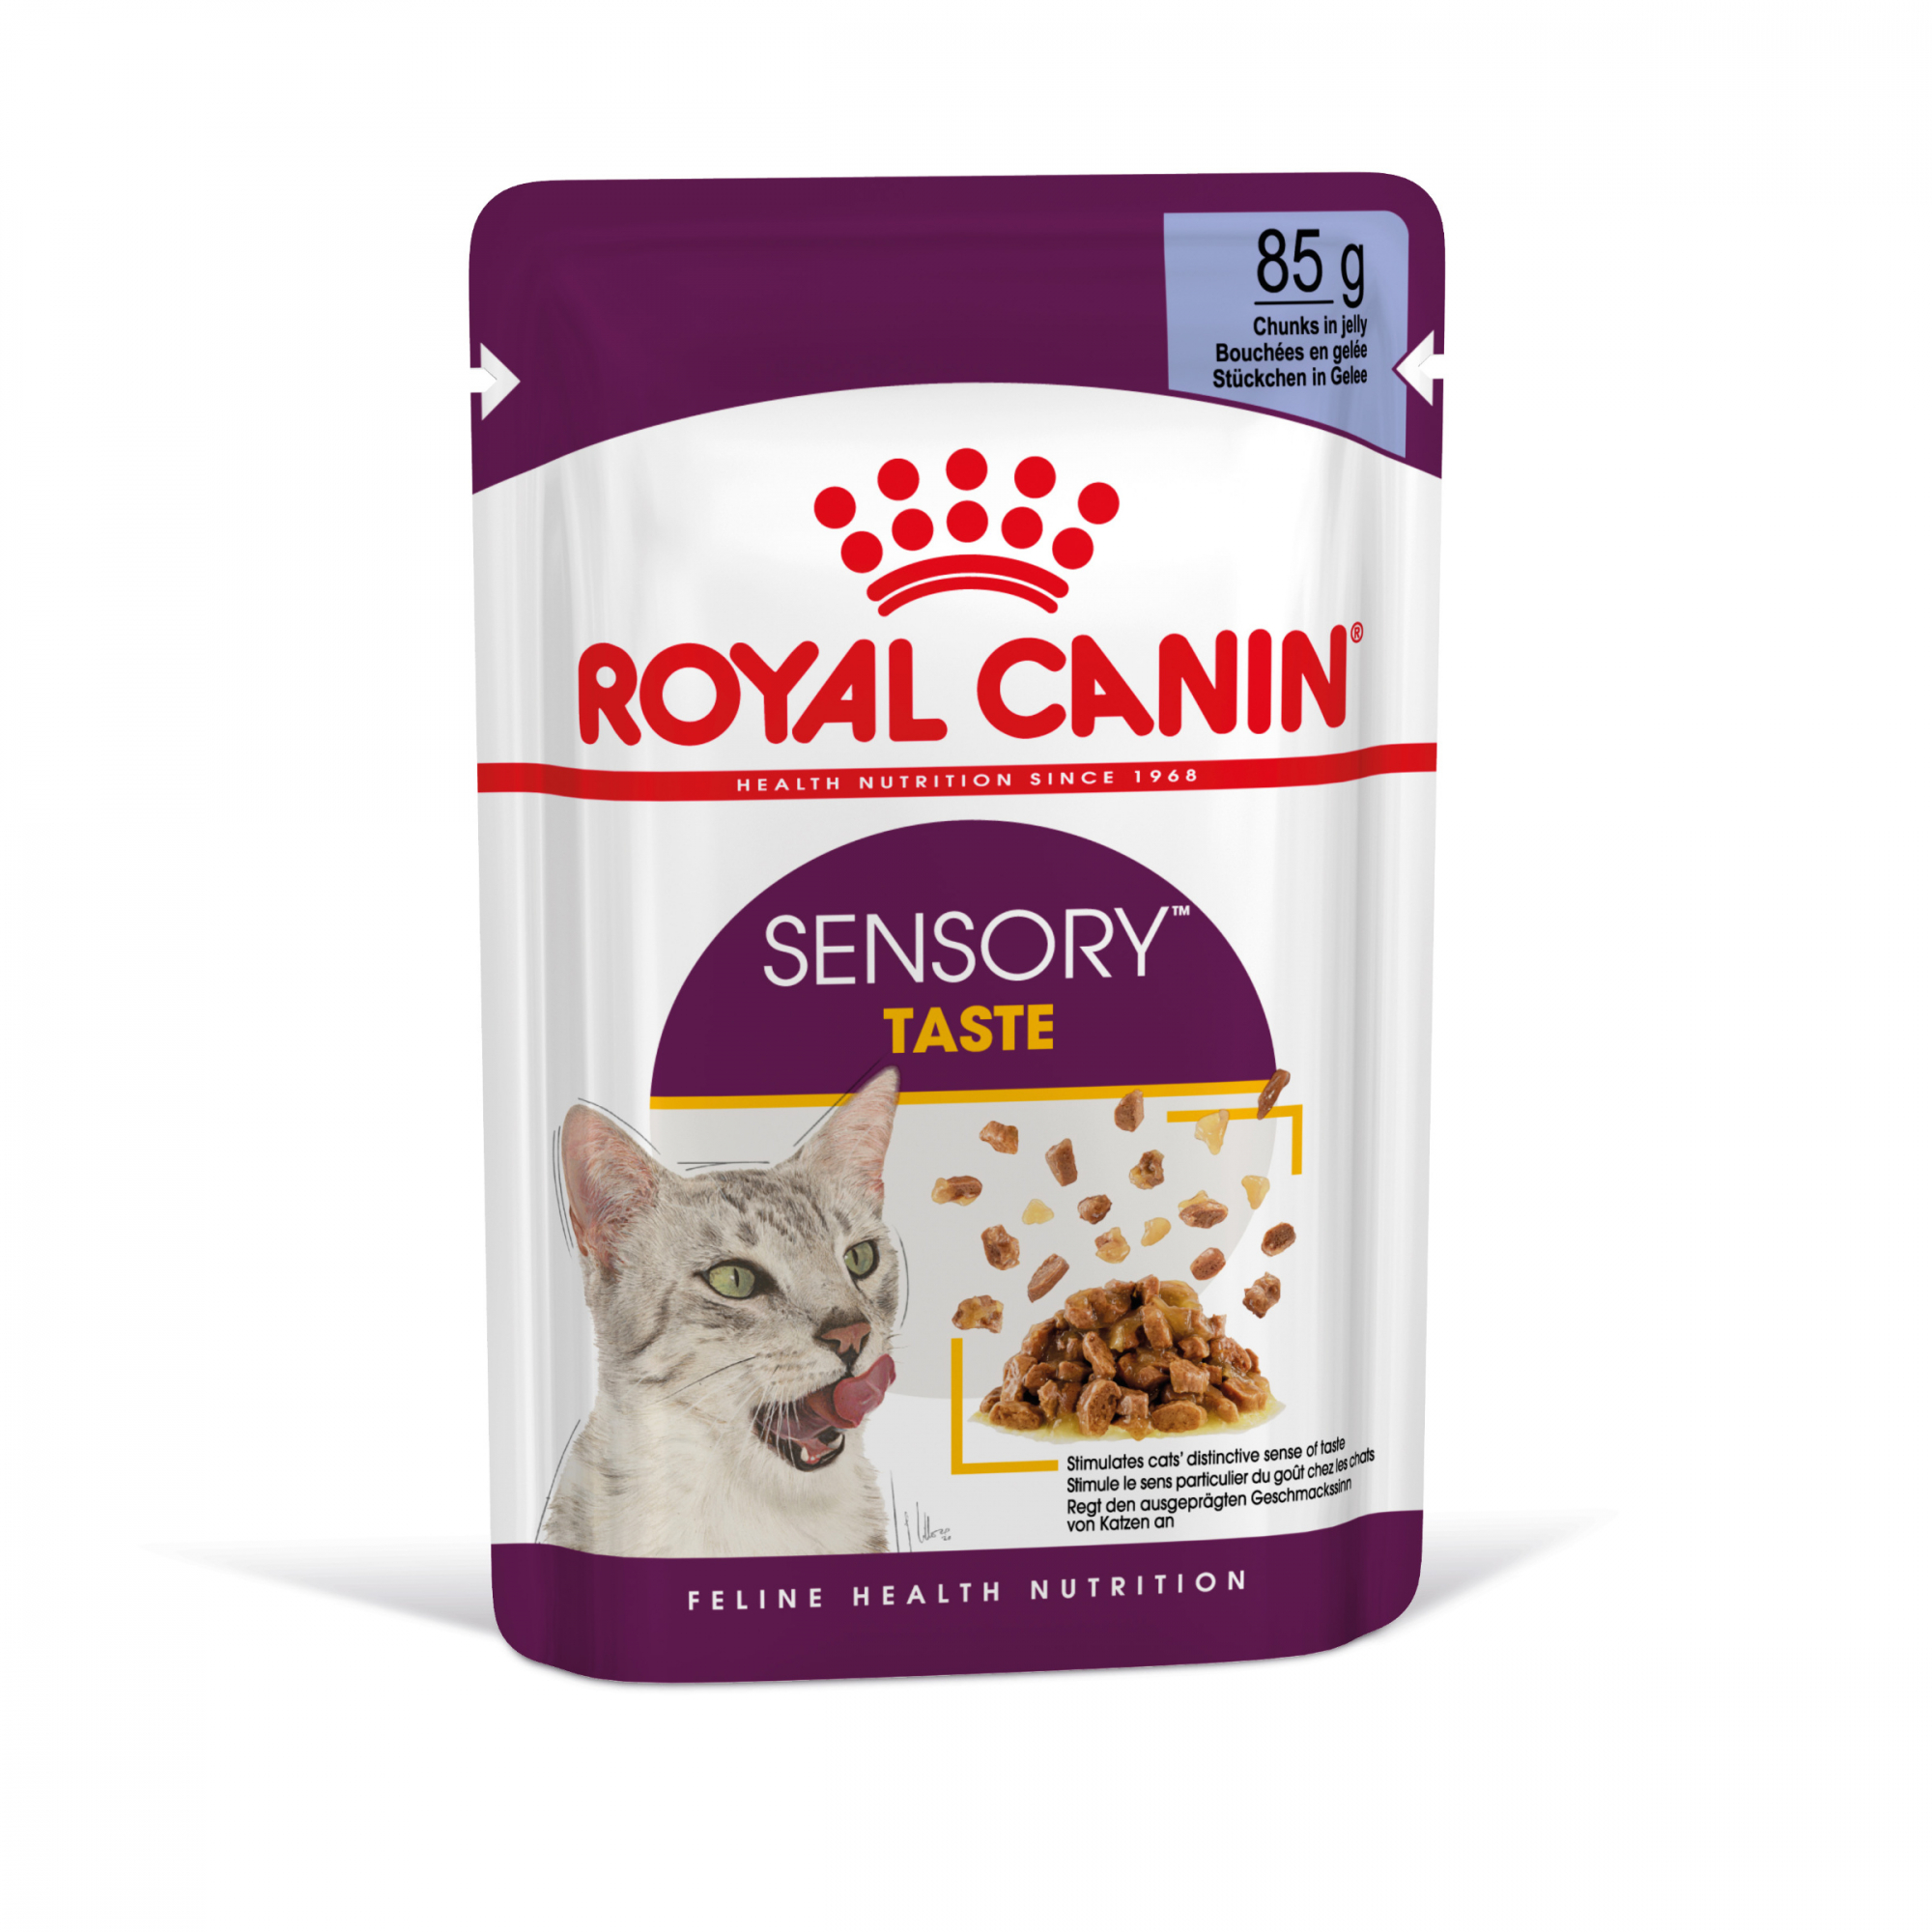 Royal Canin Sensory Taste pâtée en gelée pour chat